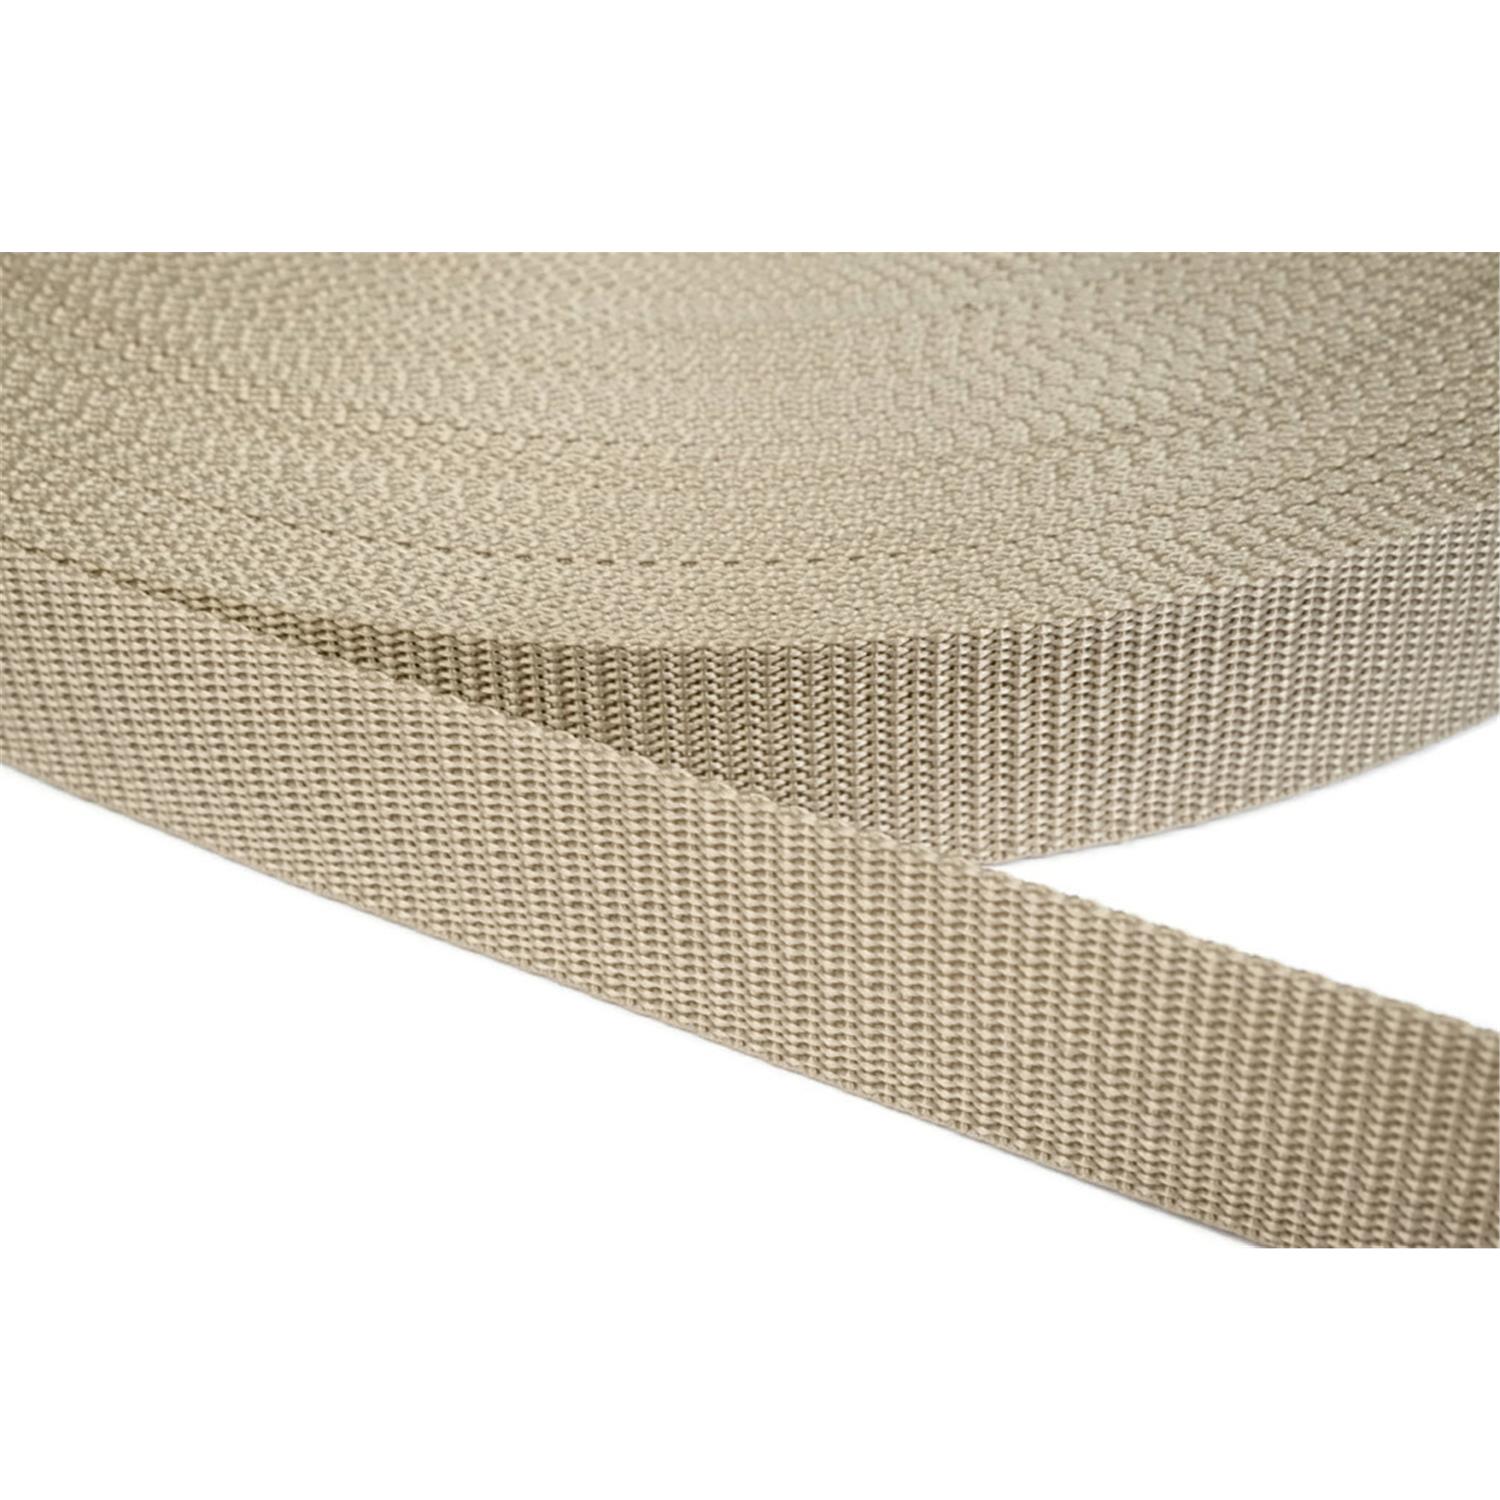 Gurtband 25mm breit aus Polypropylen in 41 Farben 03 - beige 6 Meter